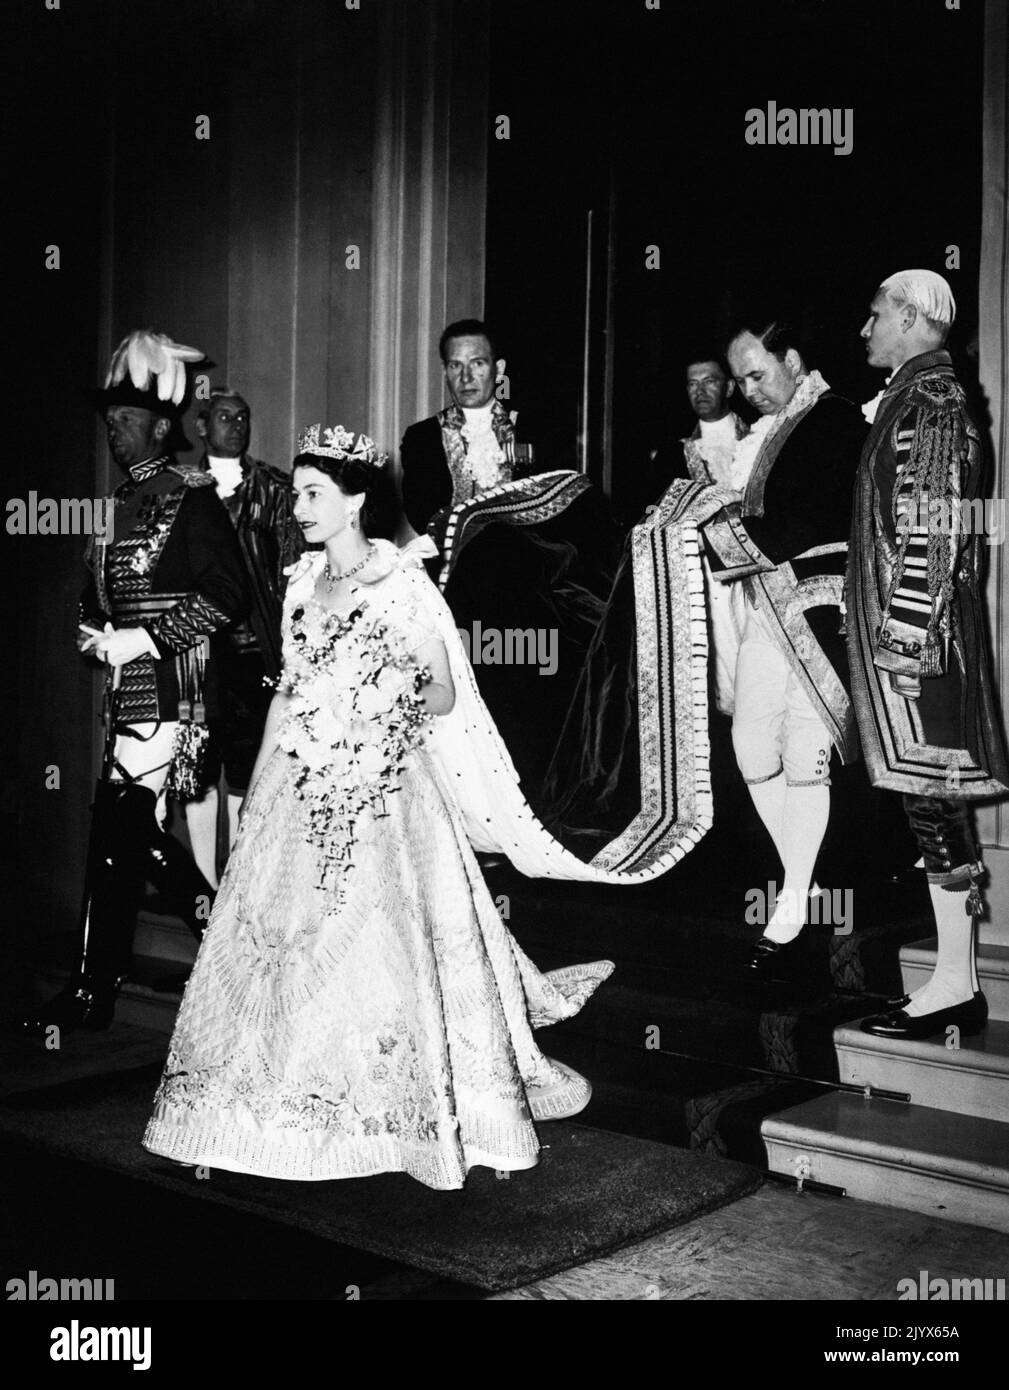 Aktenfoto vom 02/06/1953 von Königin Elizabeth II. Bei ihrer Krönung in Westminster Abbey. Wie Buckingham Palace mitteilte, starb die Königin heute Nachmittag friedlich in Balmoral. Ausgabedatum: Donnerstag, 8. September 2022. Stockfoto